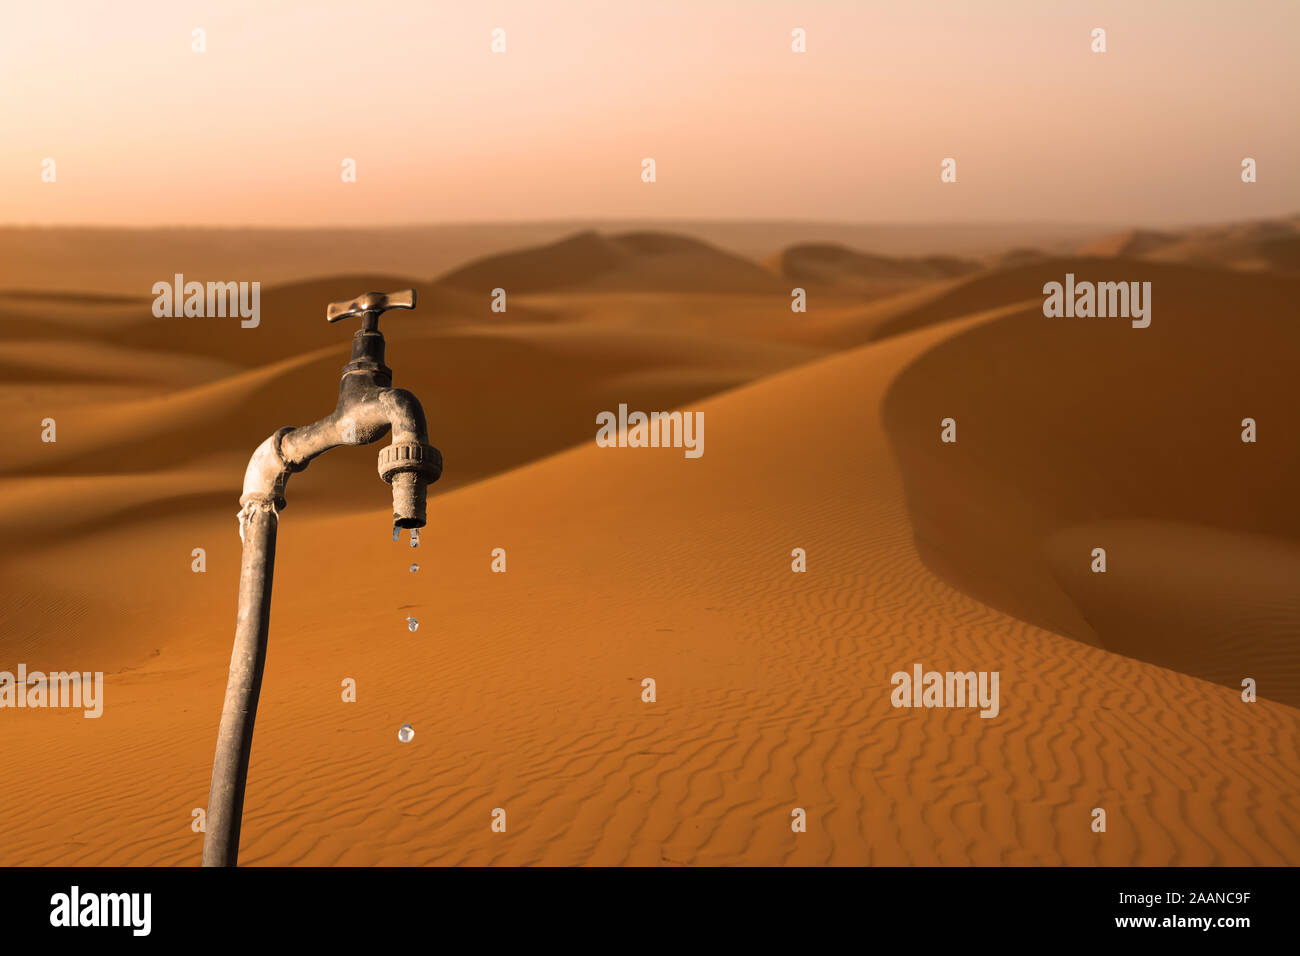 Wasserhahn, tropft und Wüste im Hintergrund, Konzept der Austrocknung des Planeten und Wasserknappheit Stockfoto